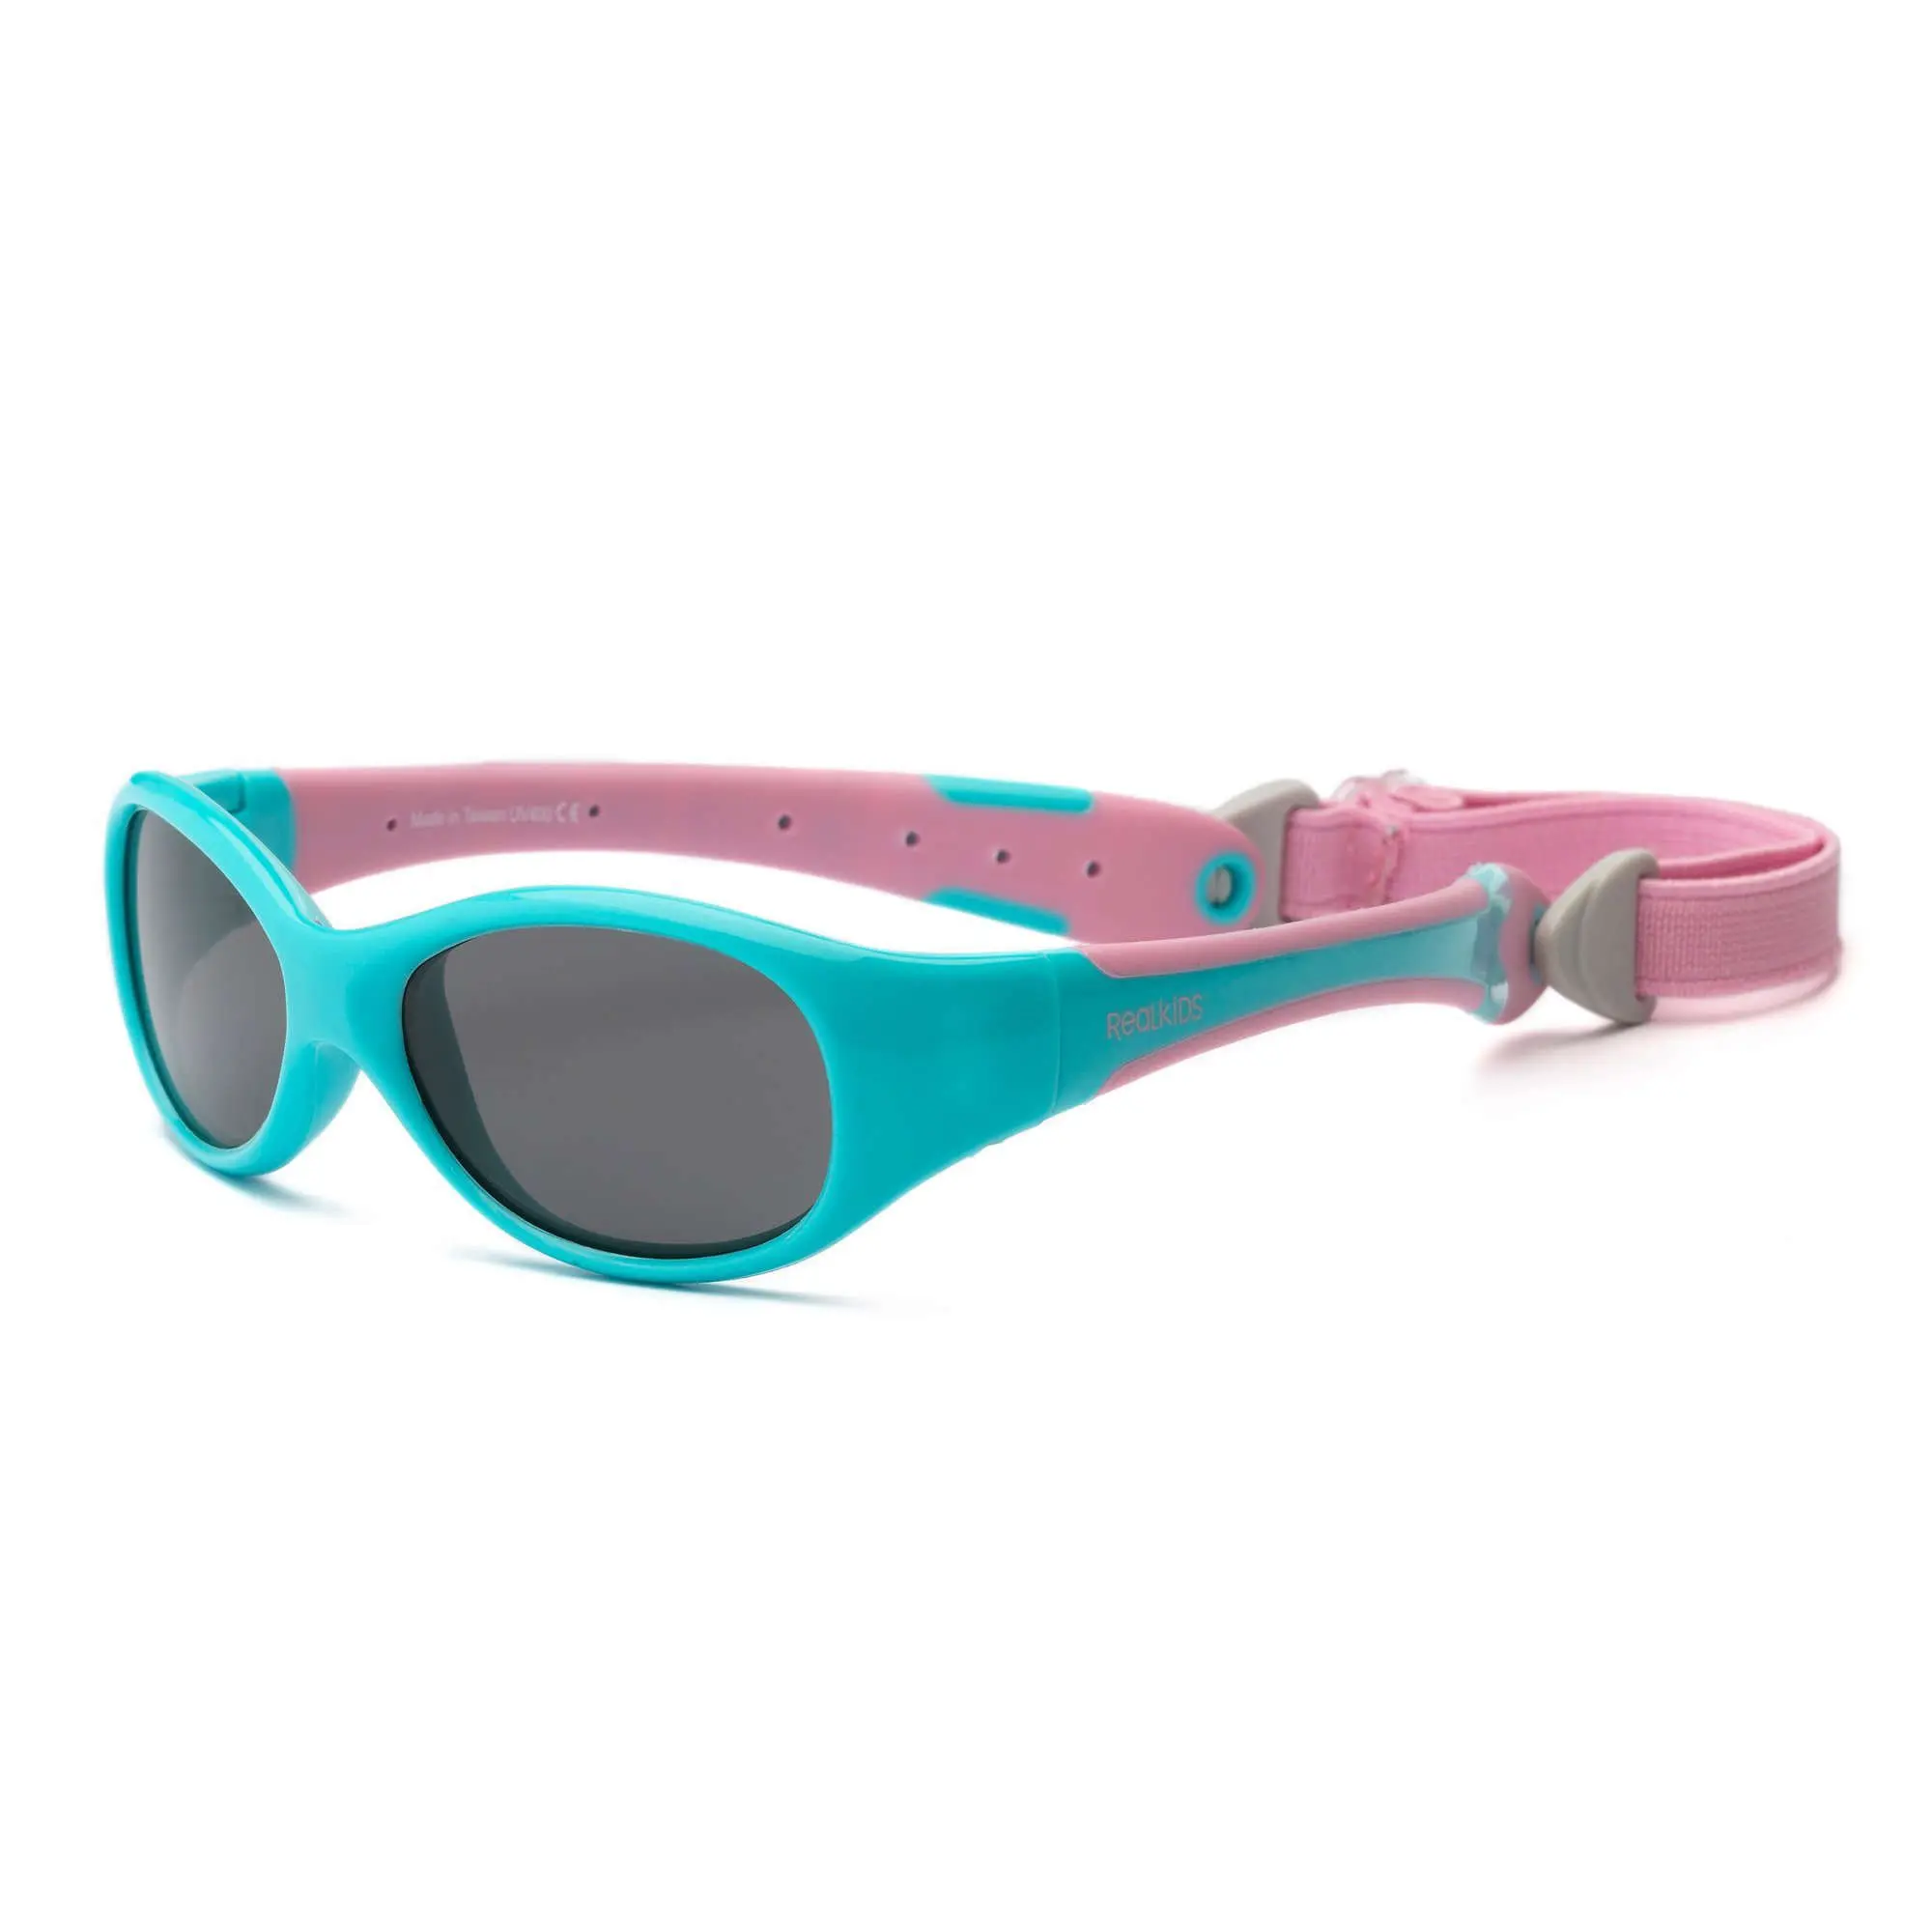 Explorer Aqua/Pink Sunglasses